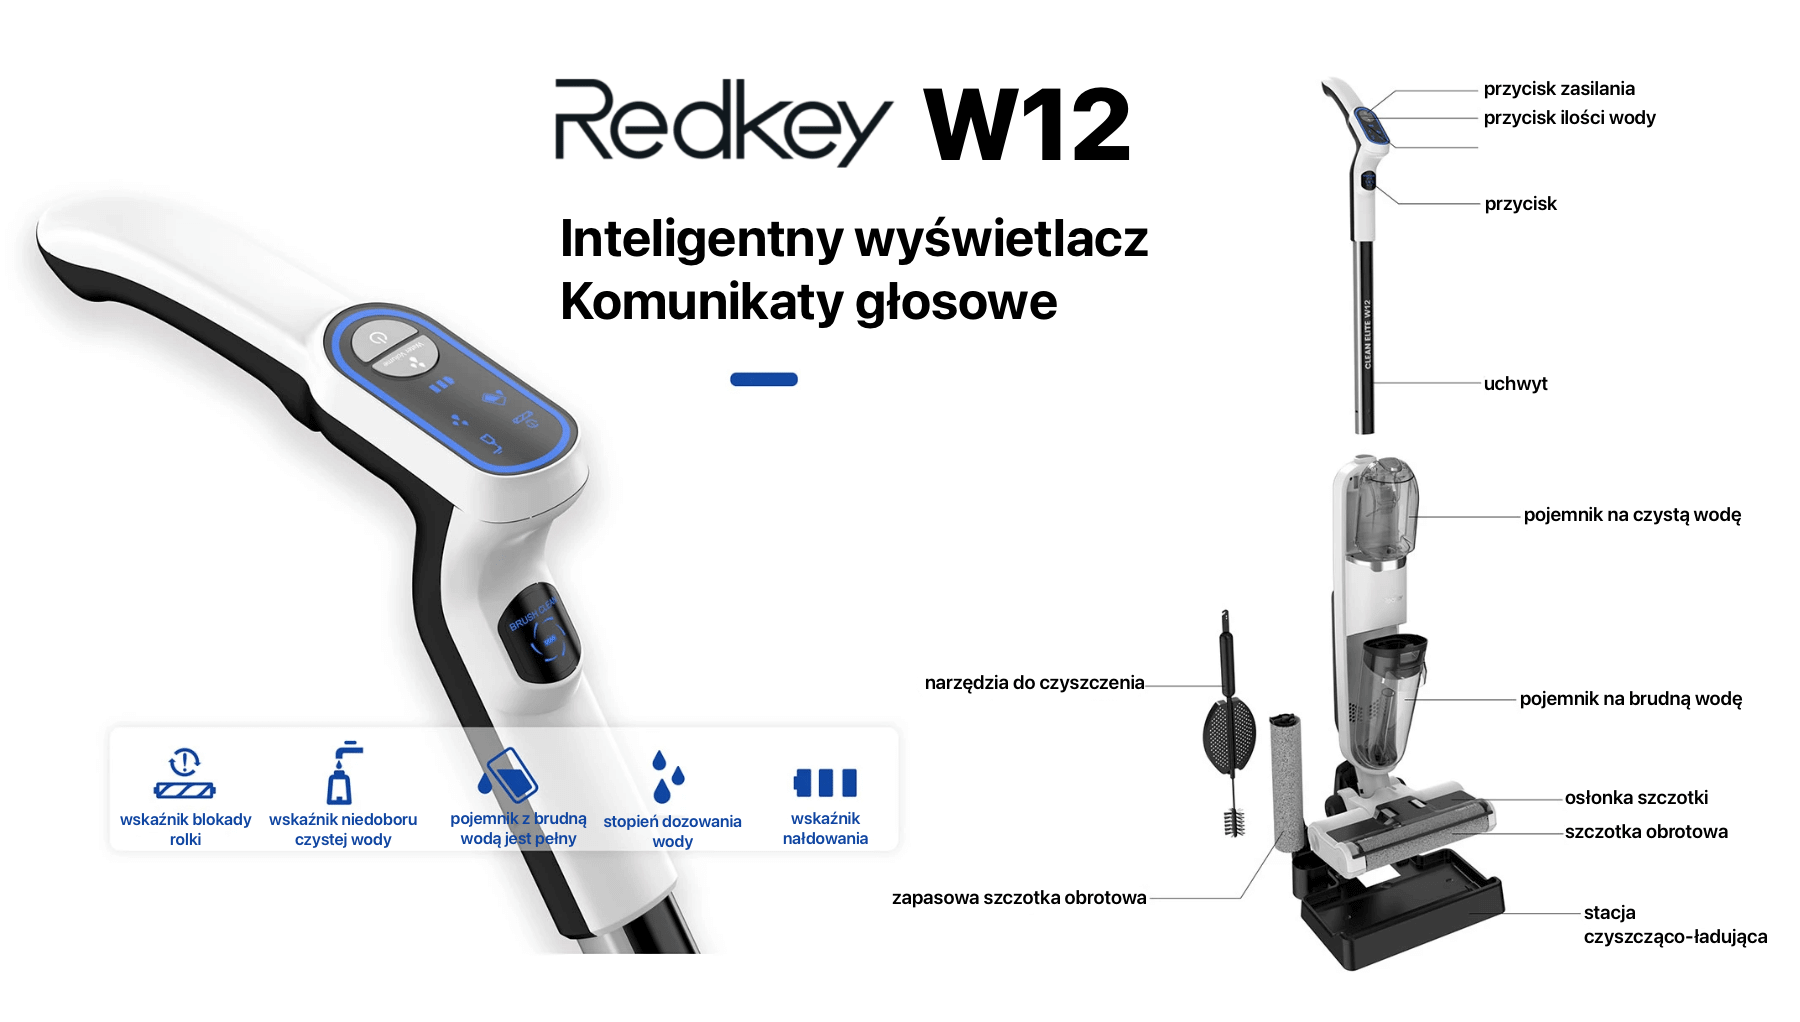 Redkey W12 opis elementów odkurzacza